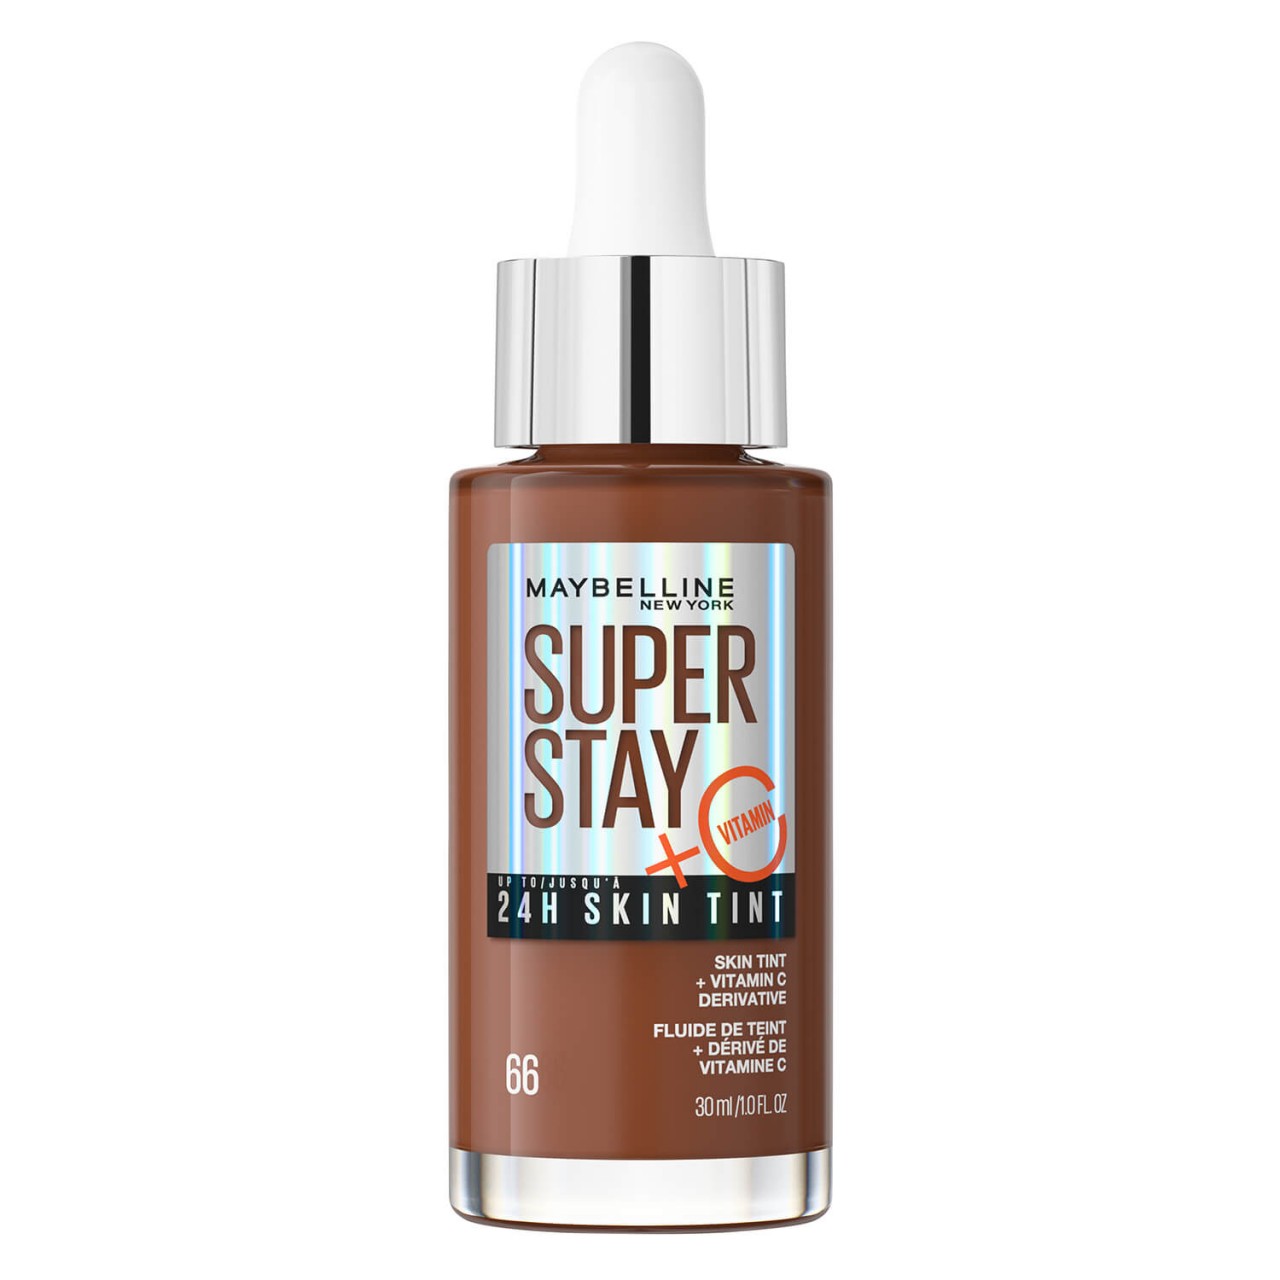 Maybelline NY Teint - Super Stay 24H Skin Tint Hazelnut 66 von Maybelline New York